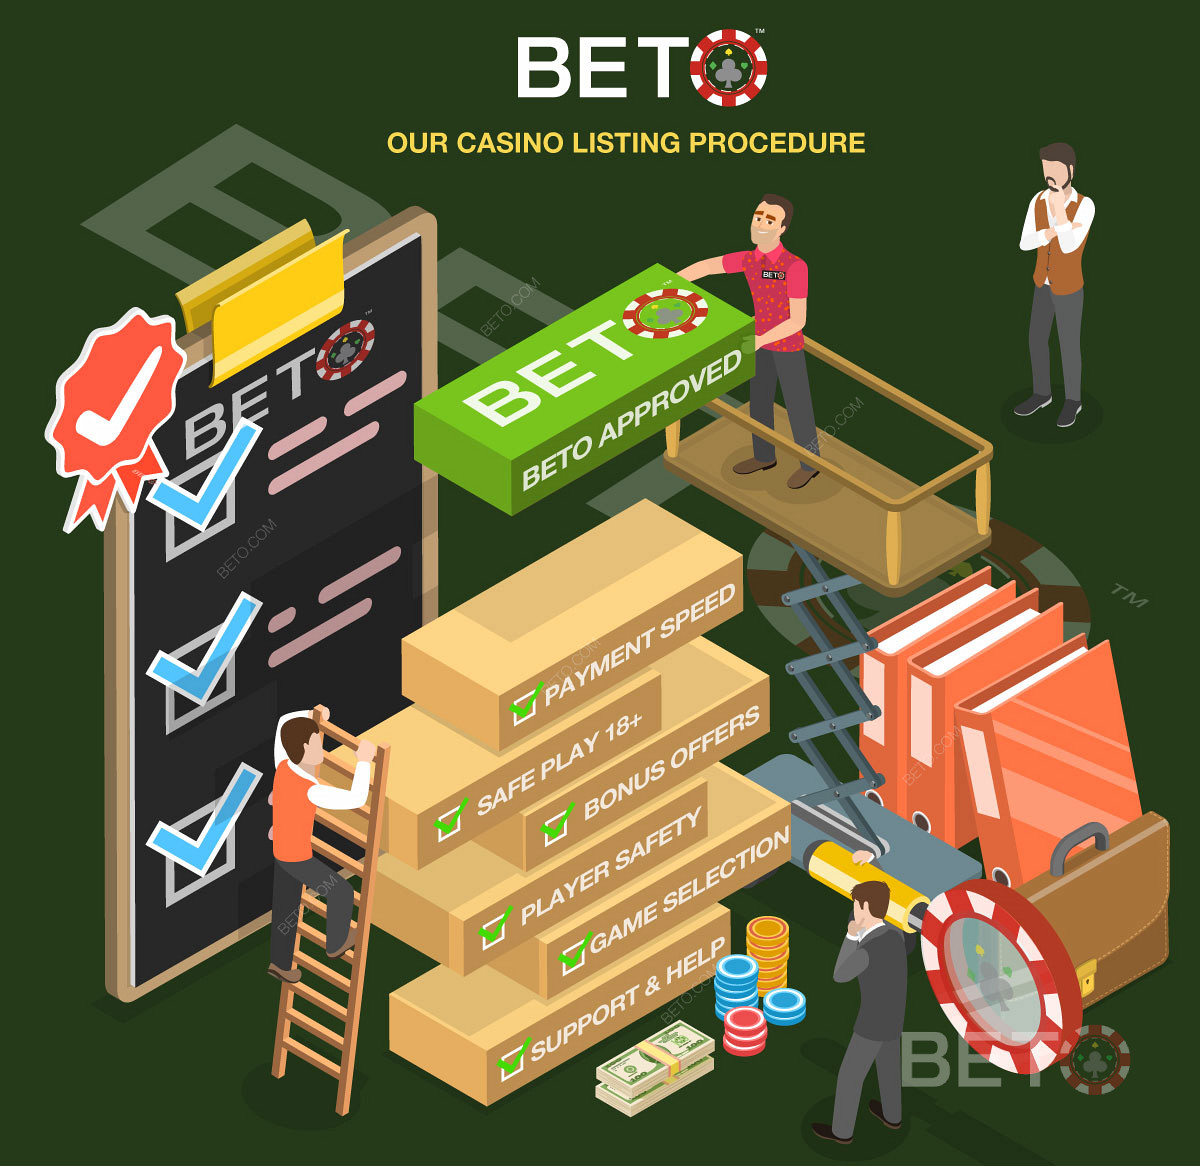 A részletes kaszinó felülvizsgálati folyamat a BETO.com-on